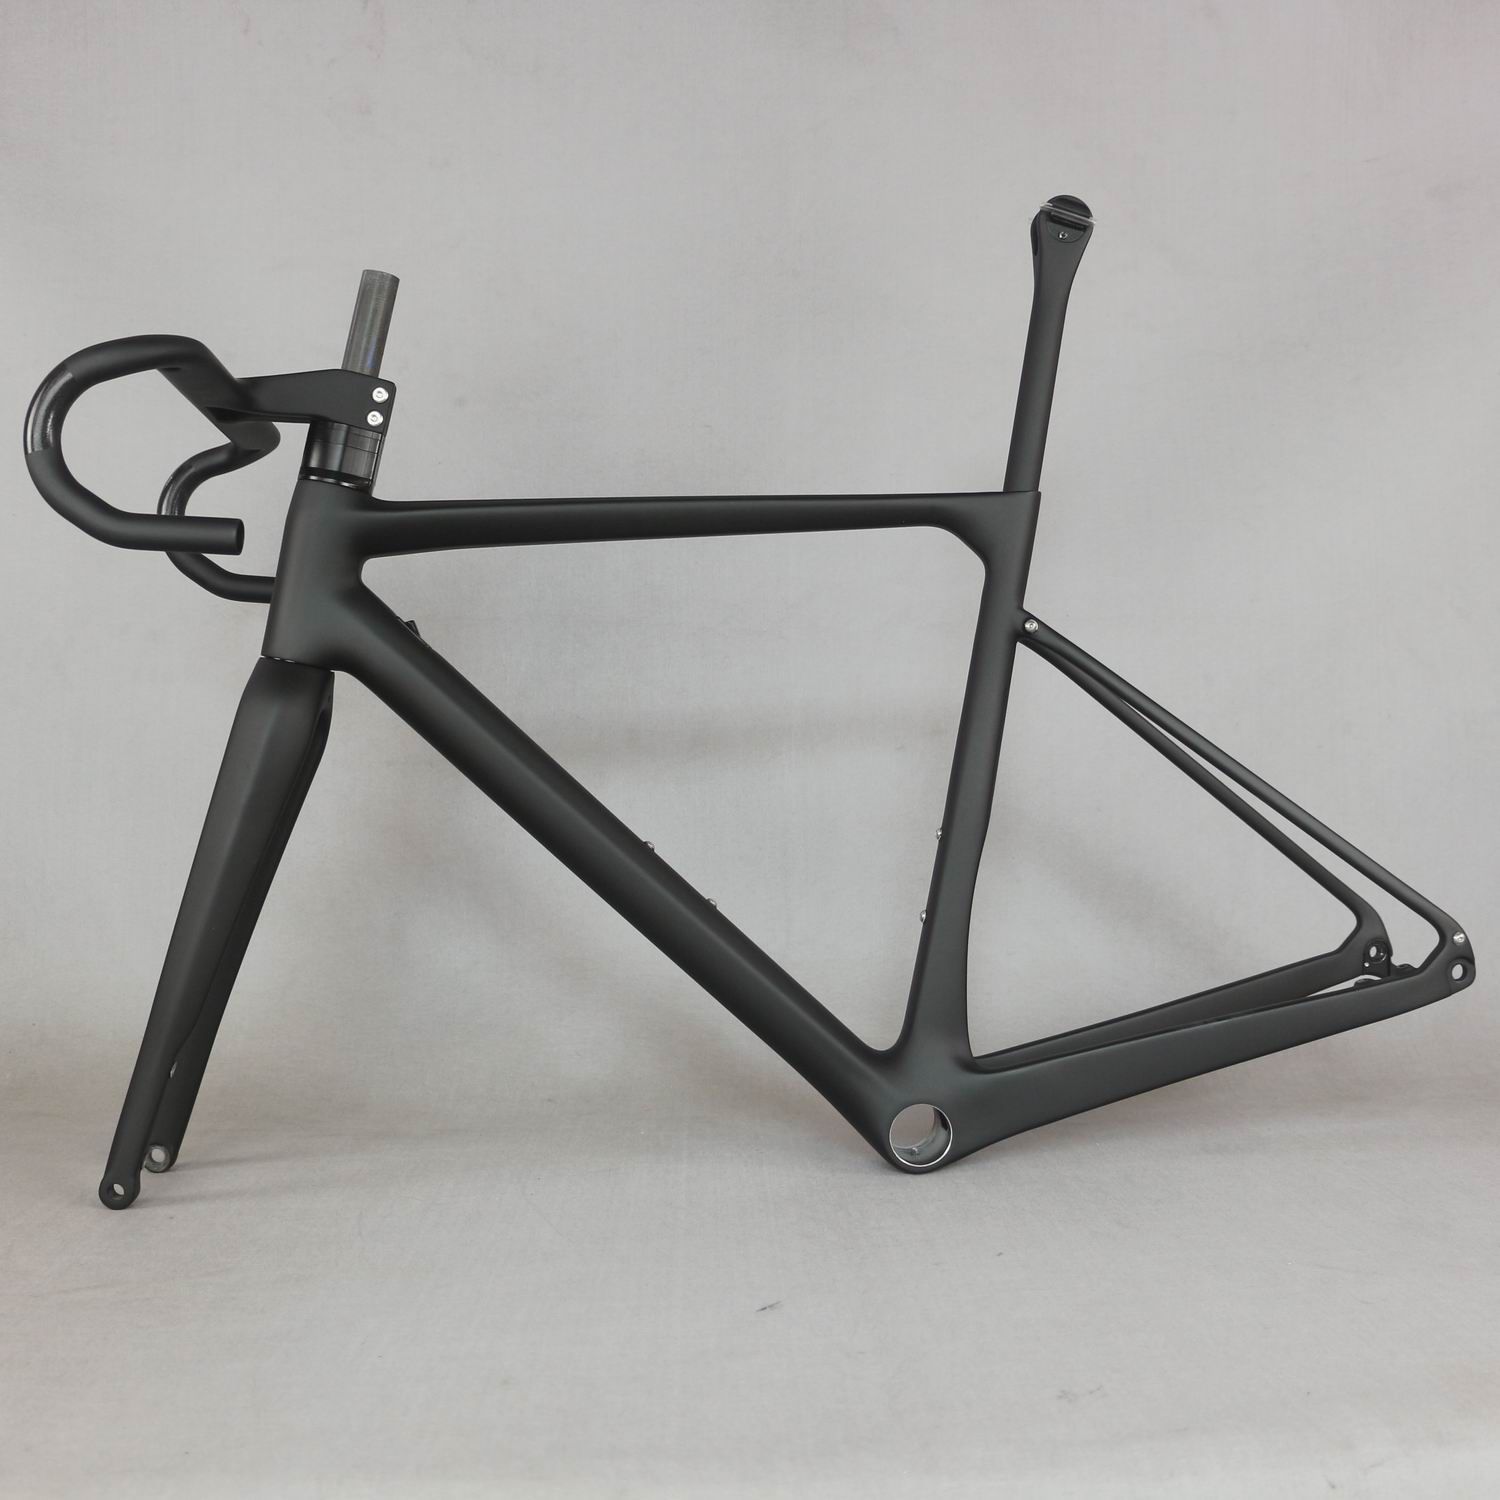 gravel bike frame carbon